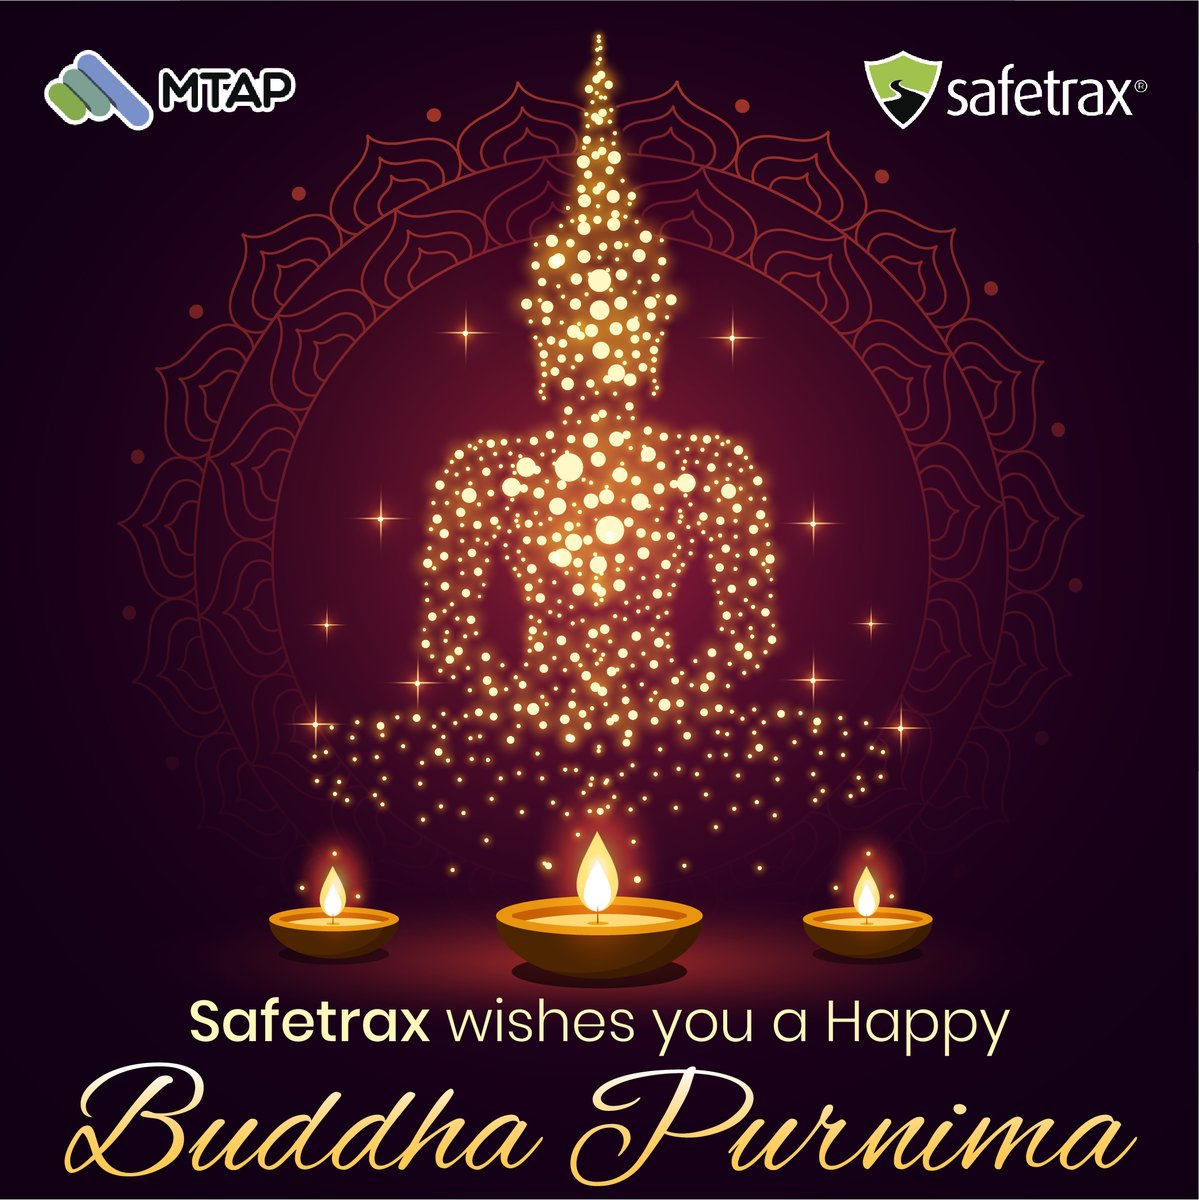 Safetrax wishes you a happy #BuddhaPurnima!

#transportautomation #employeesafety #stayhomestaysafe